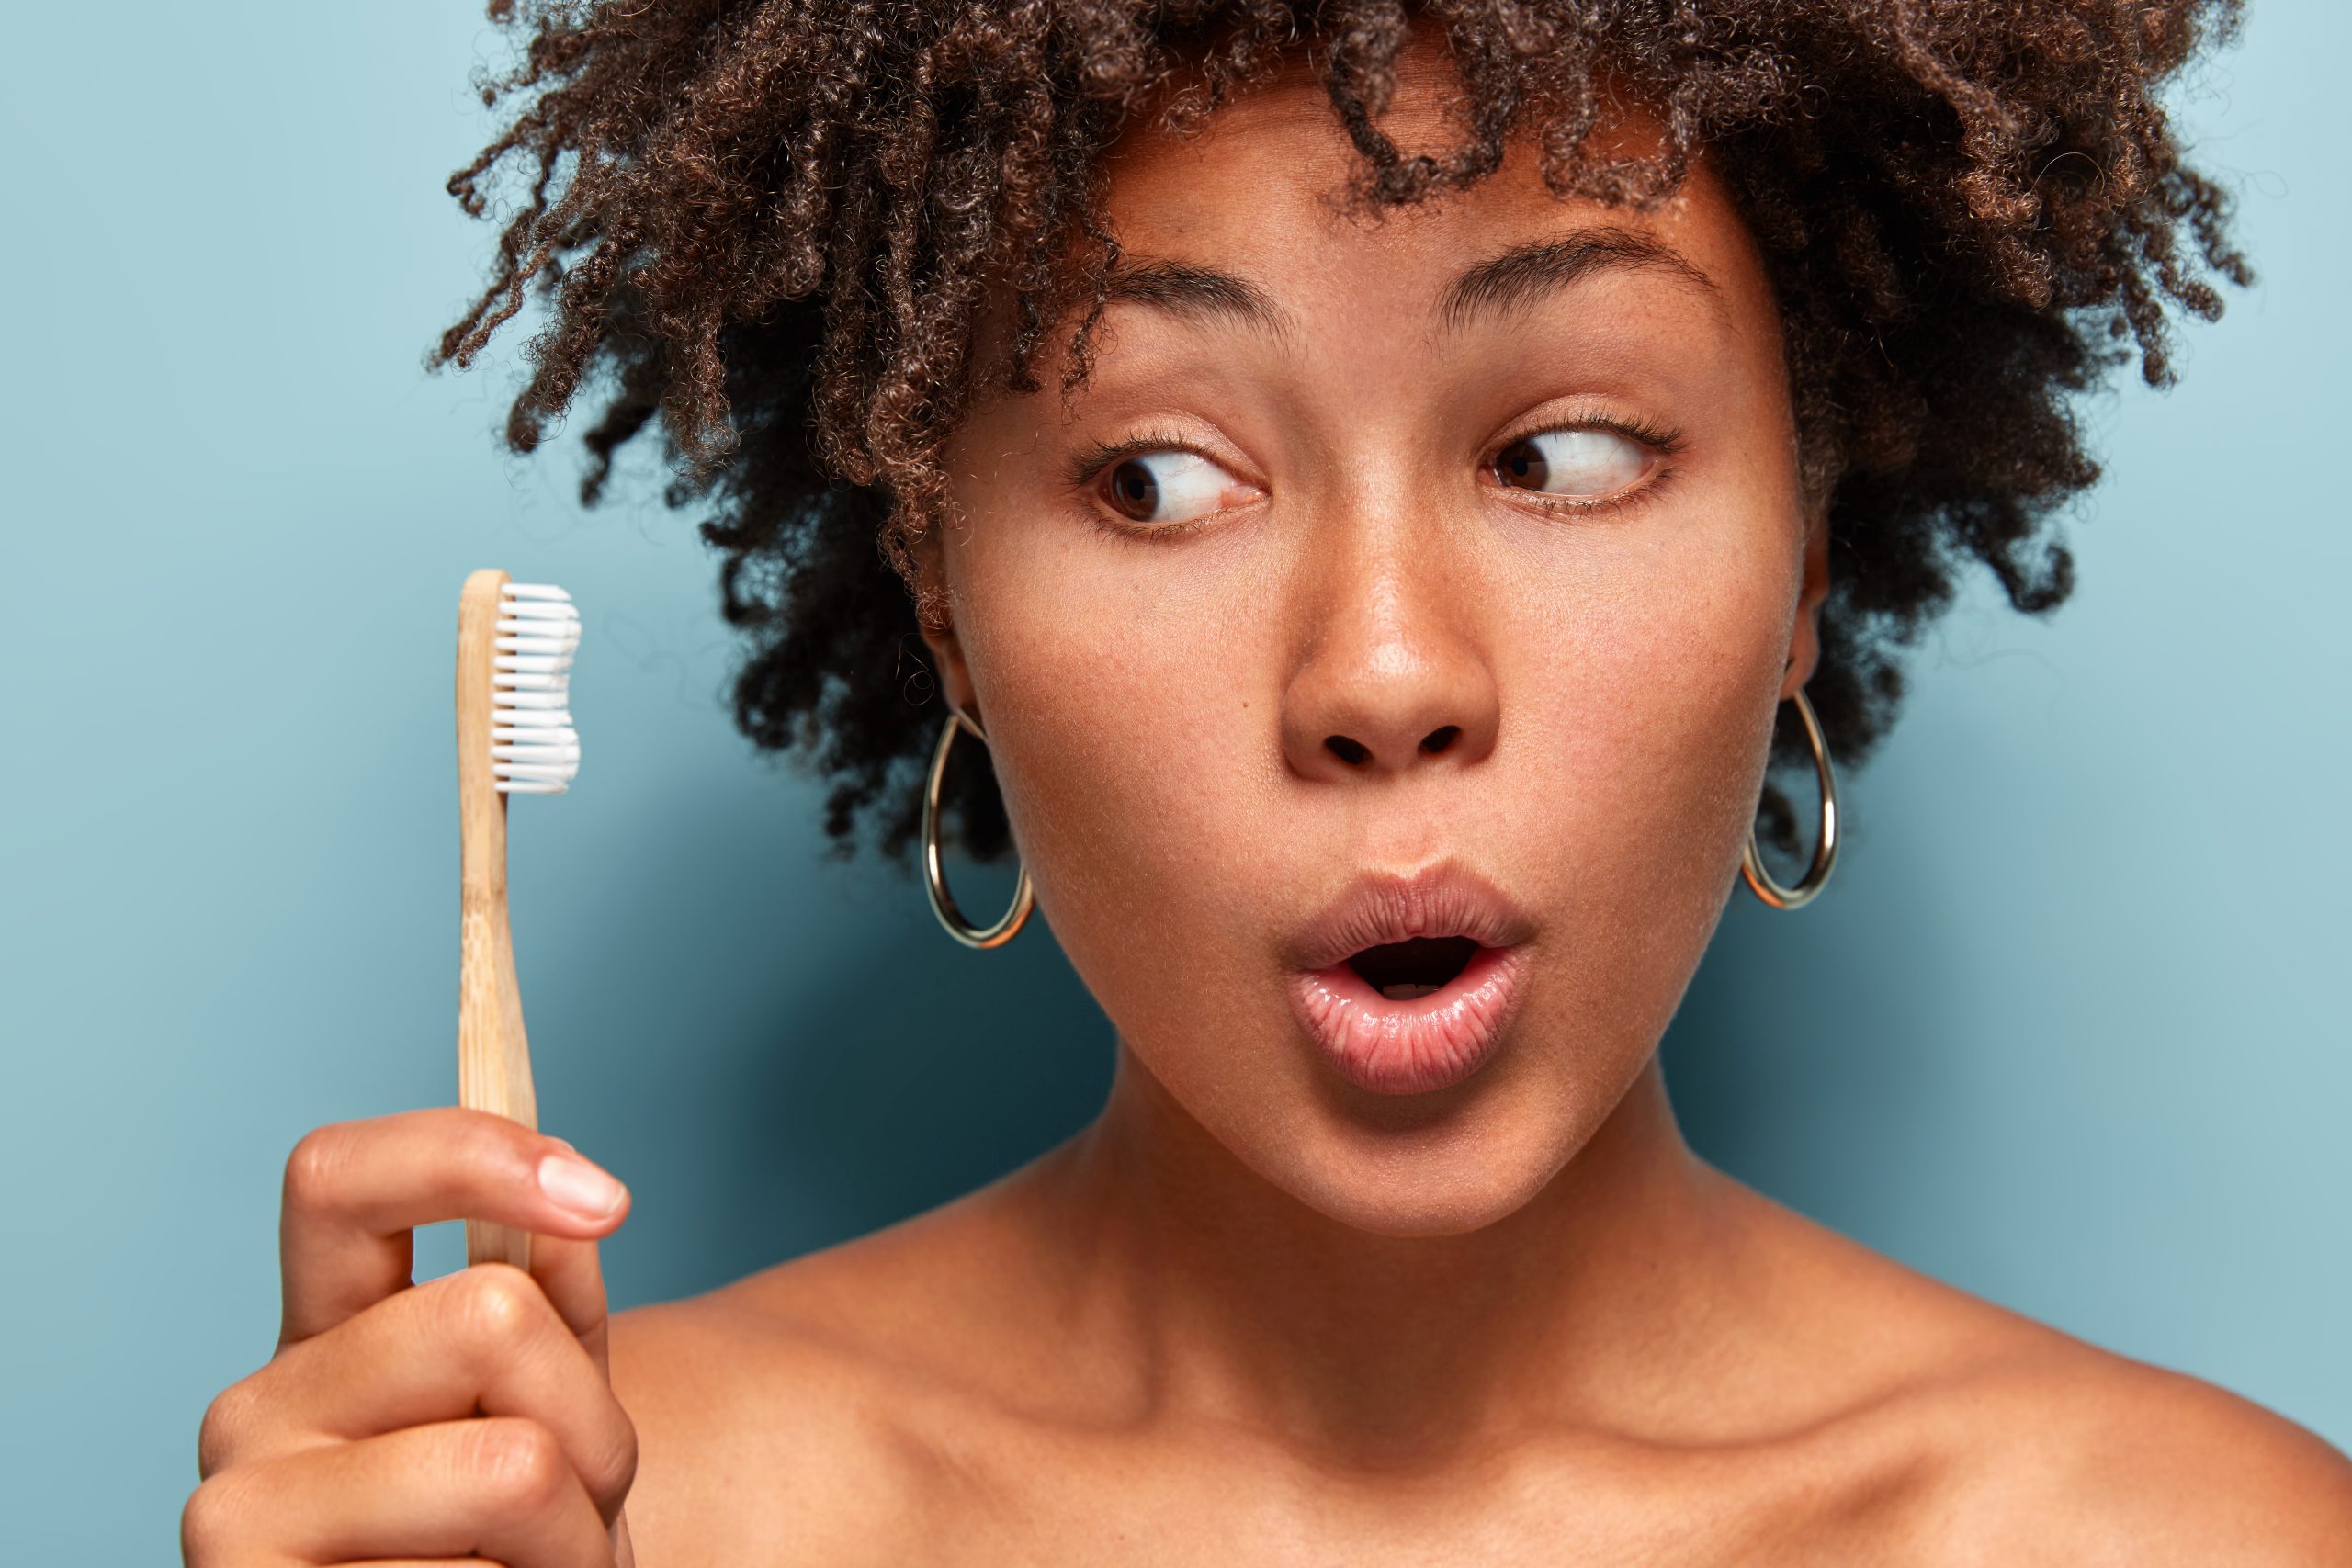 Maioria das escovas de dentes não proporciona uma escovação segura, segundo pesquisa - foto Freepik